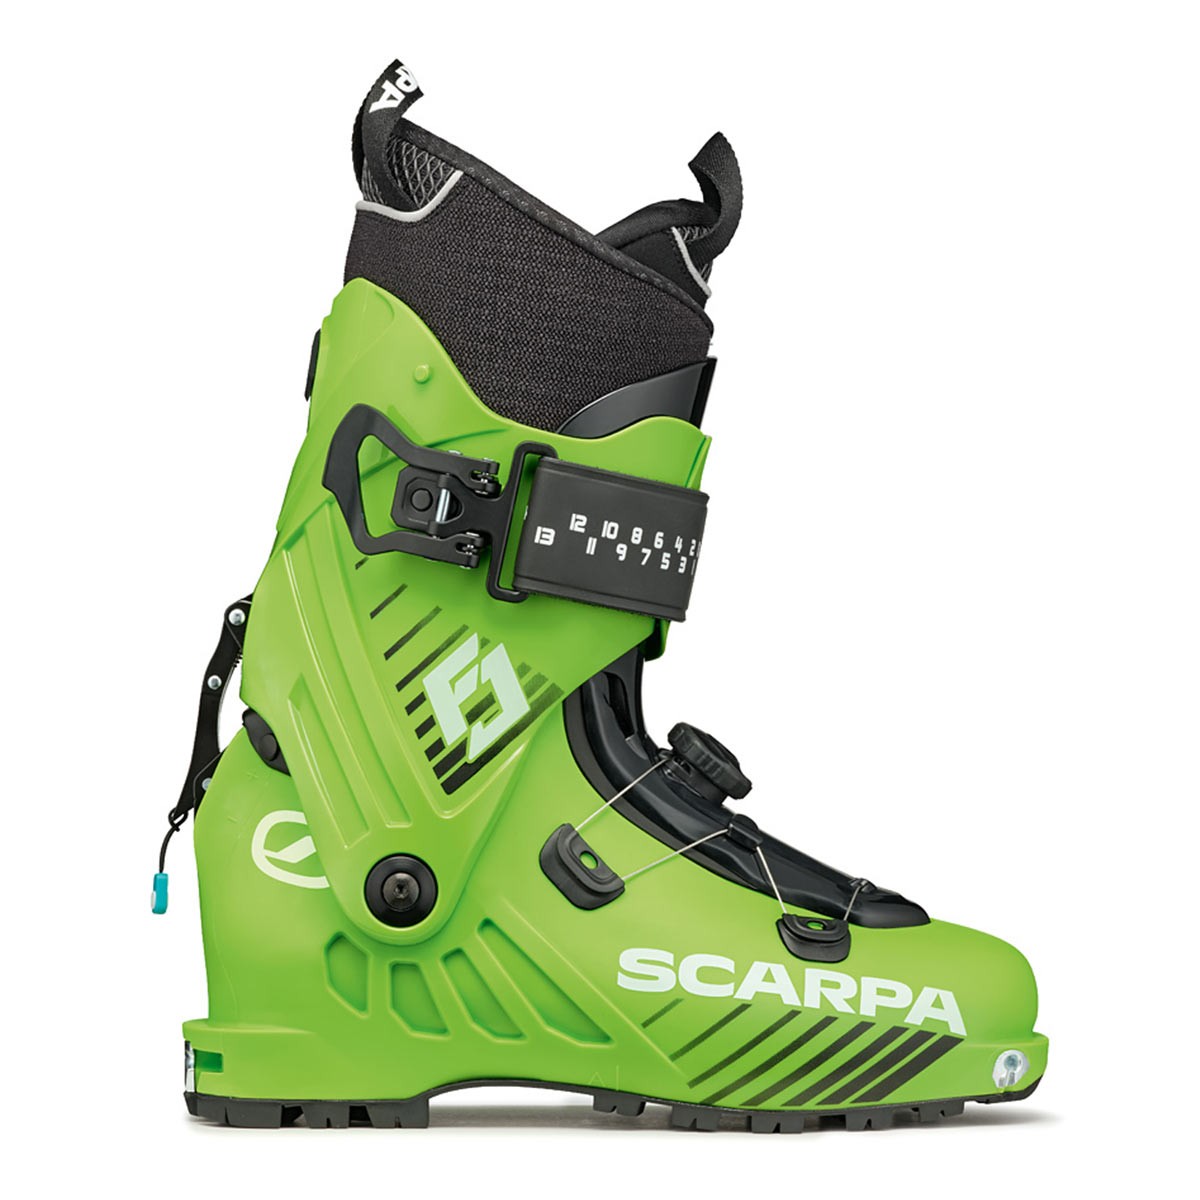  Scarponi Alpinismo Scarpa F1 Junior (Colore: Green Lime, Taglia: 23) 